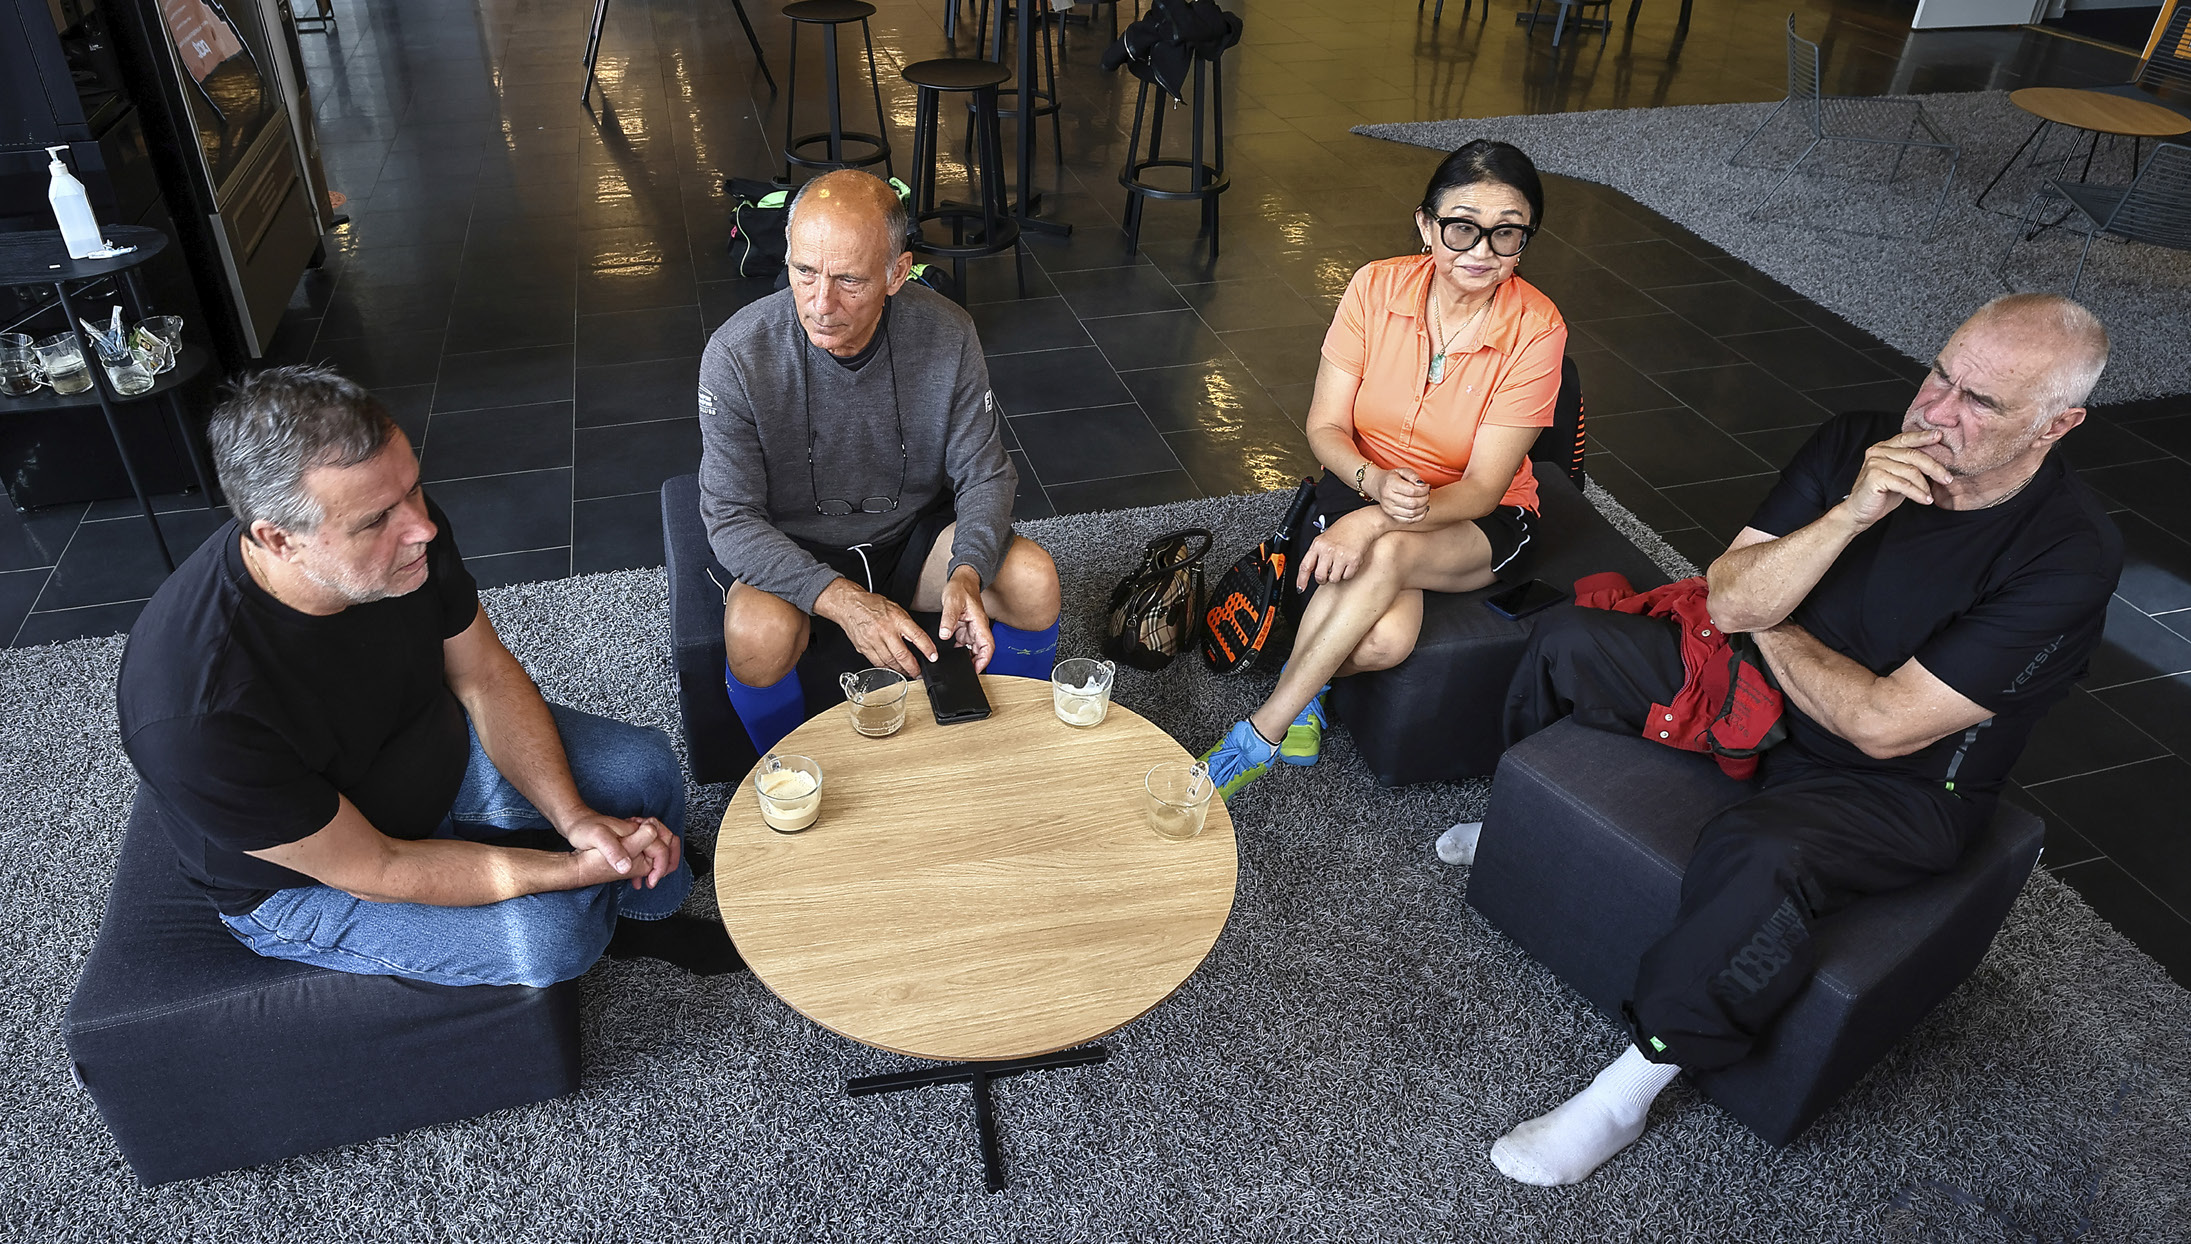 Fyra personer fotograferade ovanifrån, sitter klädda i sportkläder i fåtöljer runt ett runt bord med kaffekoppar.